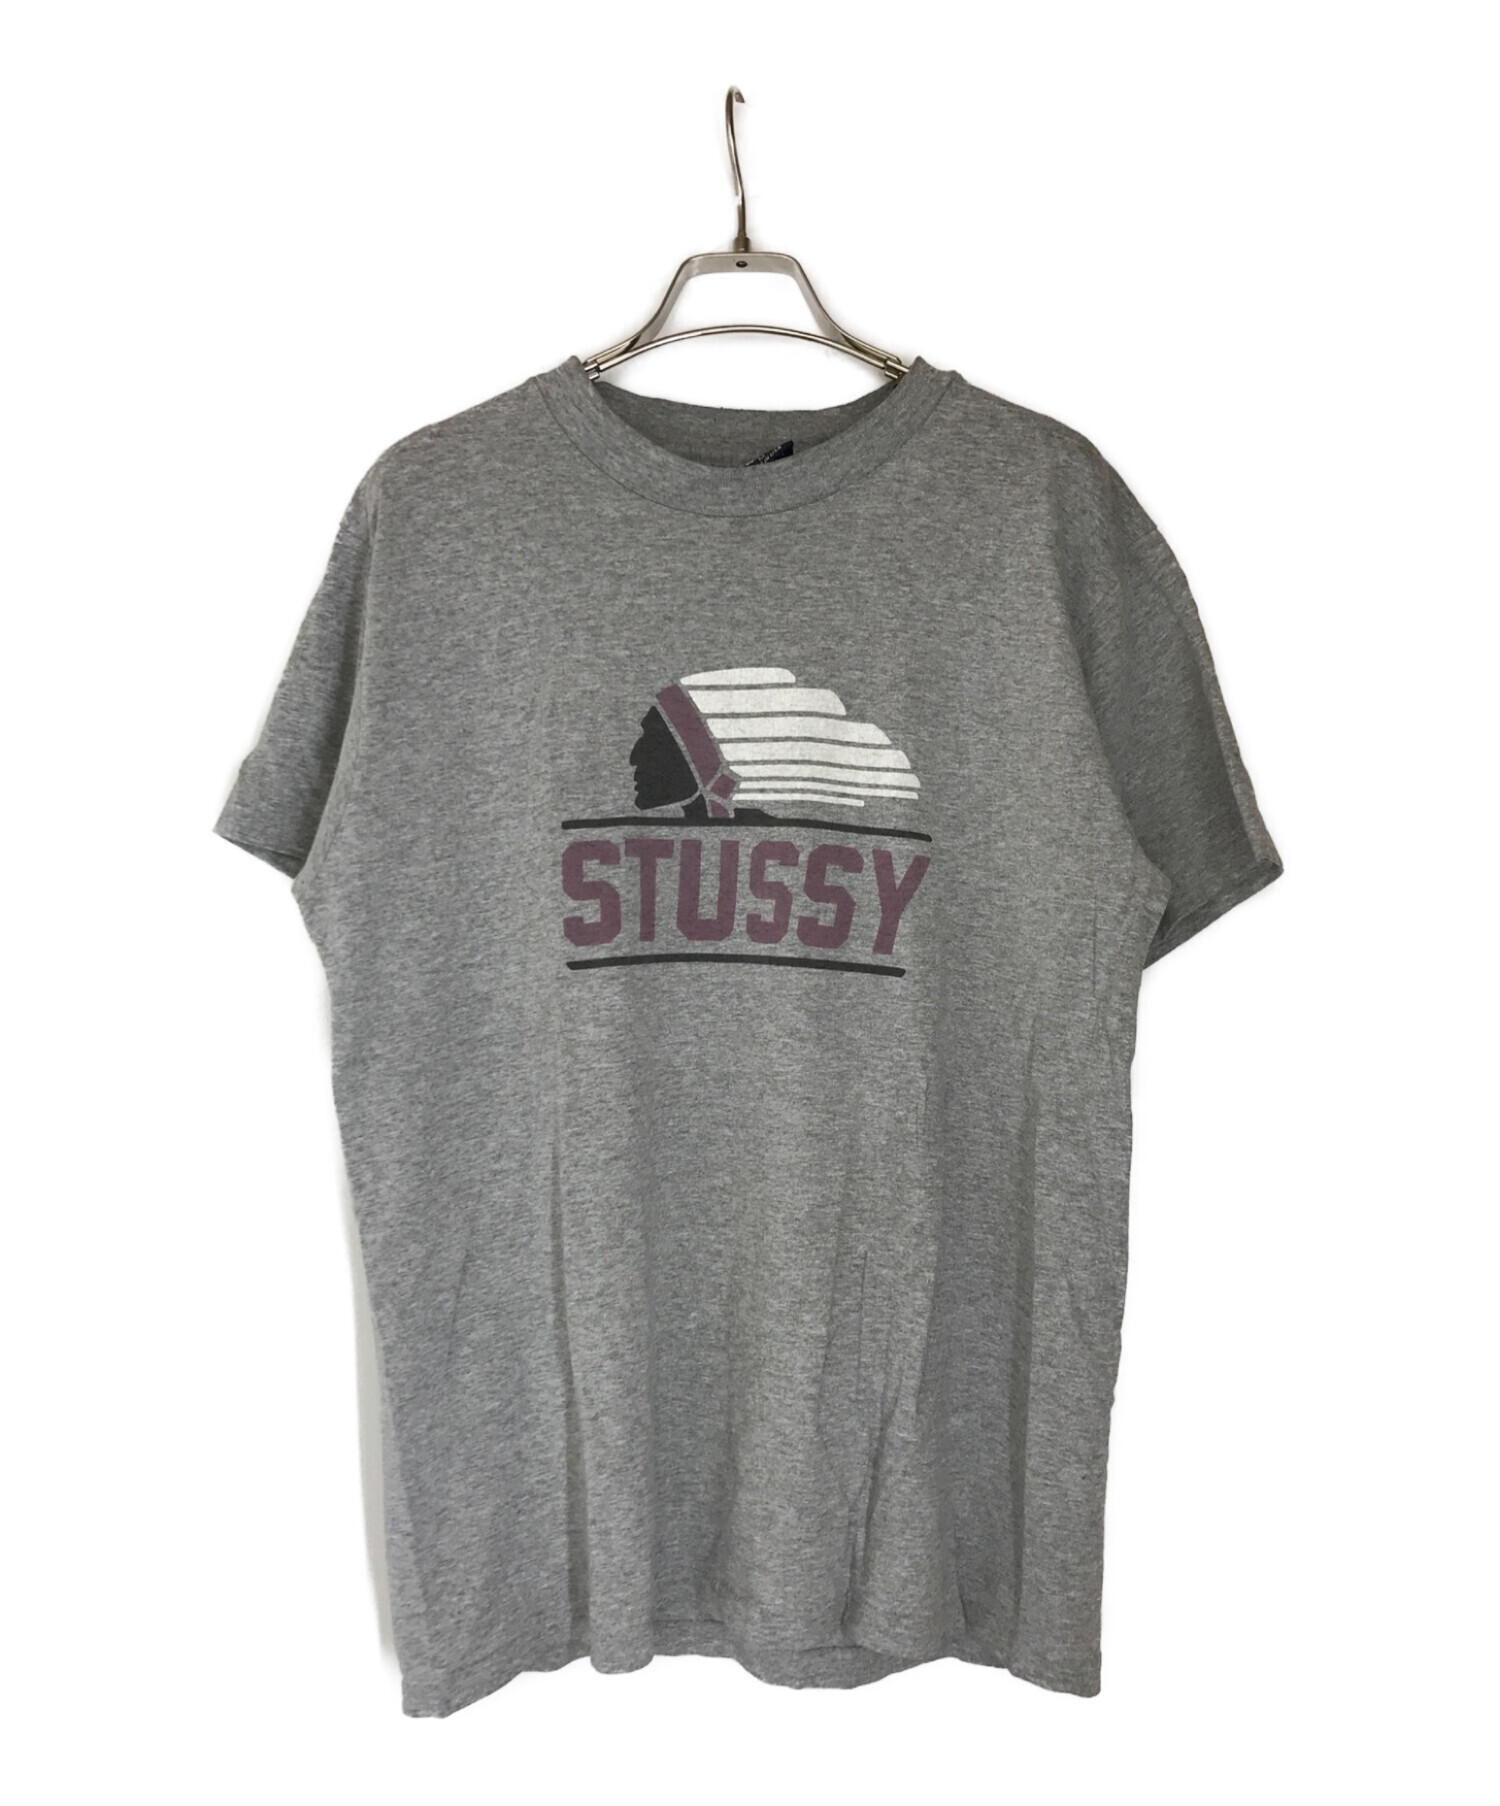 stussy (ステューシー) 90s後期USA製プリントTシャツ グレー サイズ:M